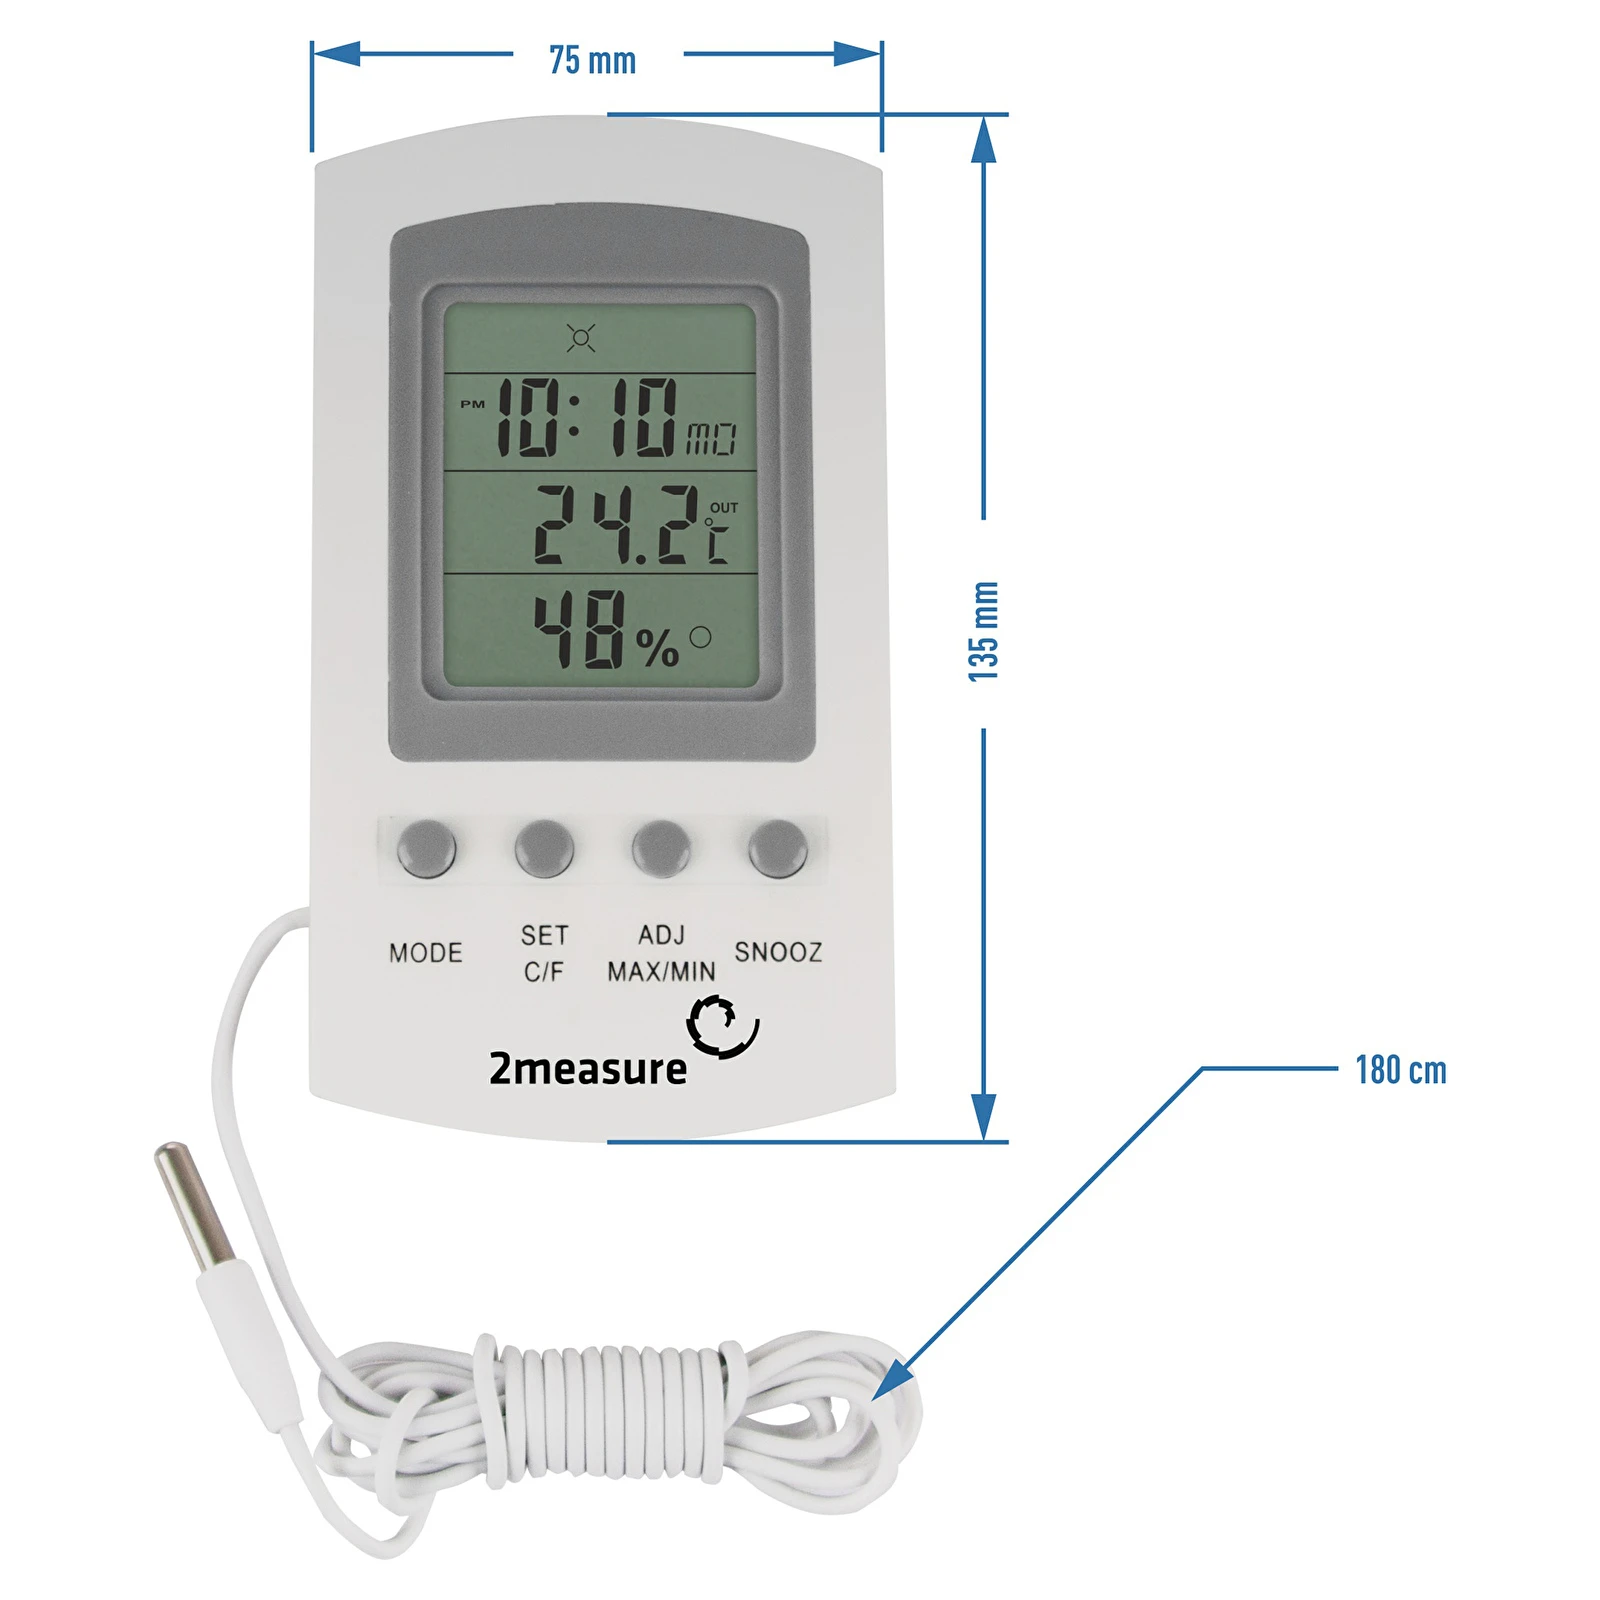 Digitales Thermometer mit Hygrometer, -20°C - 60°C, weiß